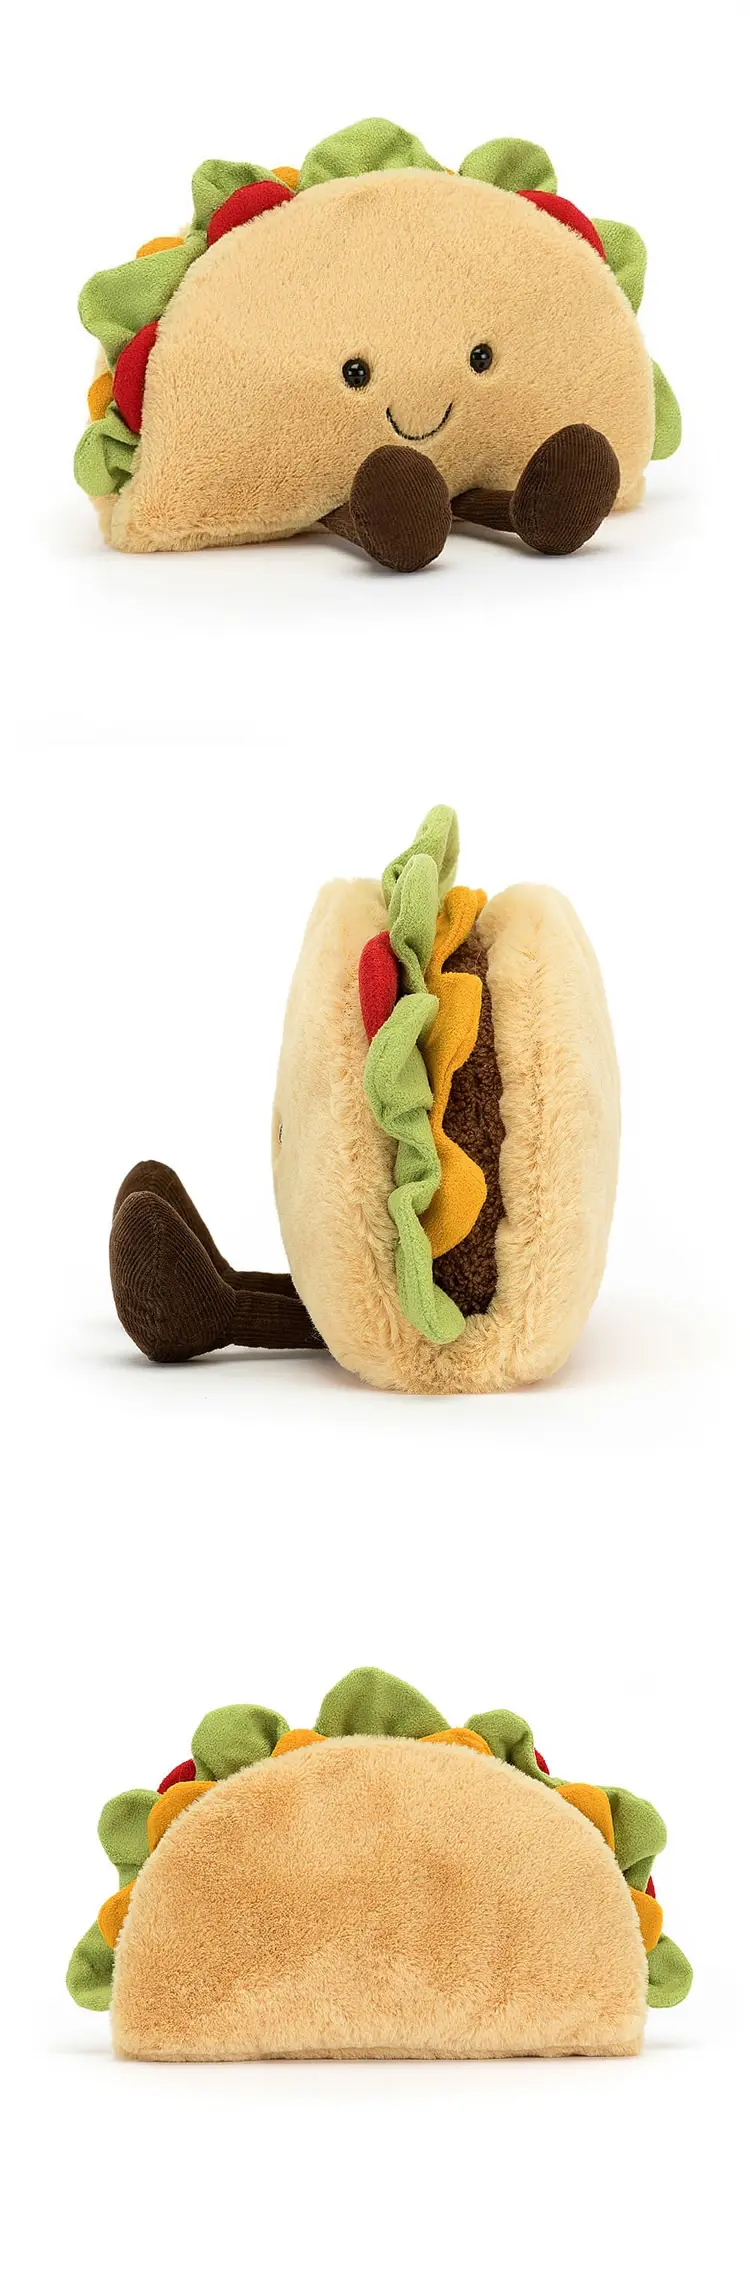 JellyCat Amuseable Taco 趣味墨西哥夾餅公仔